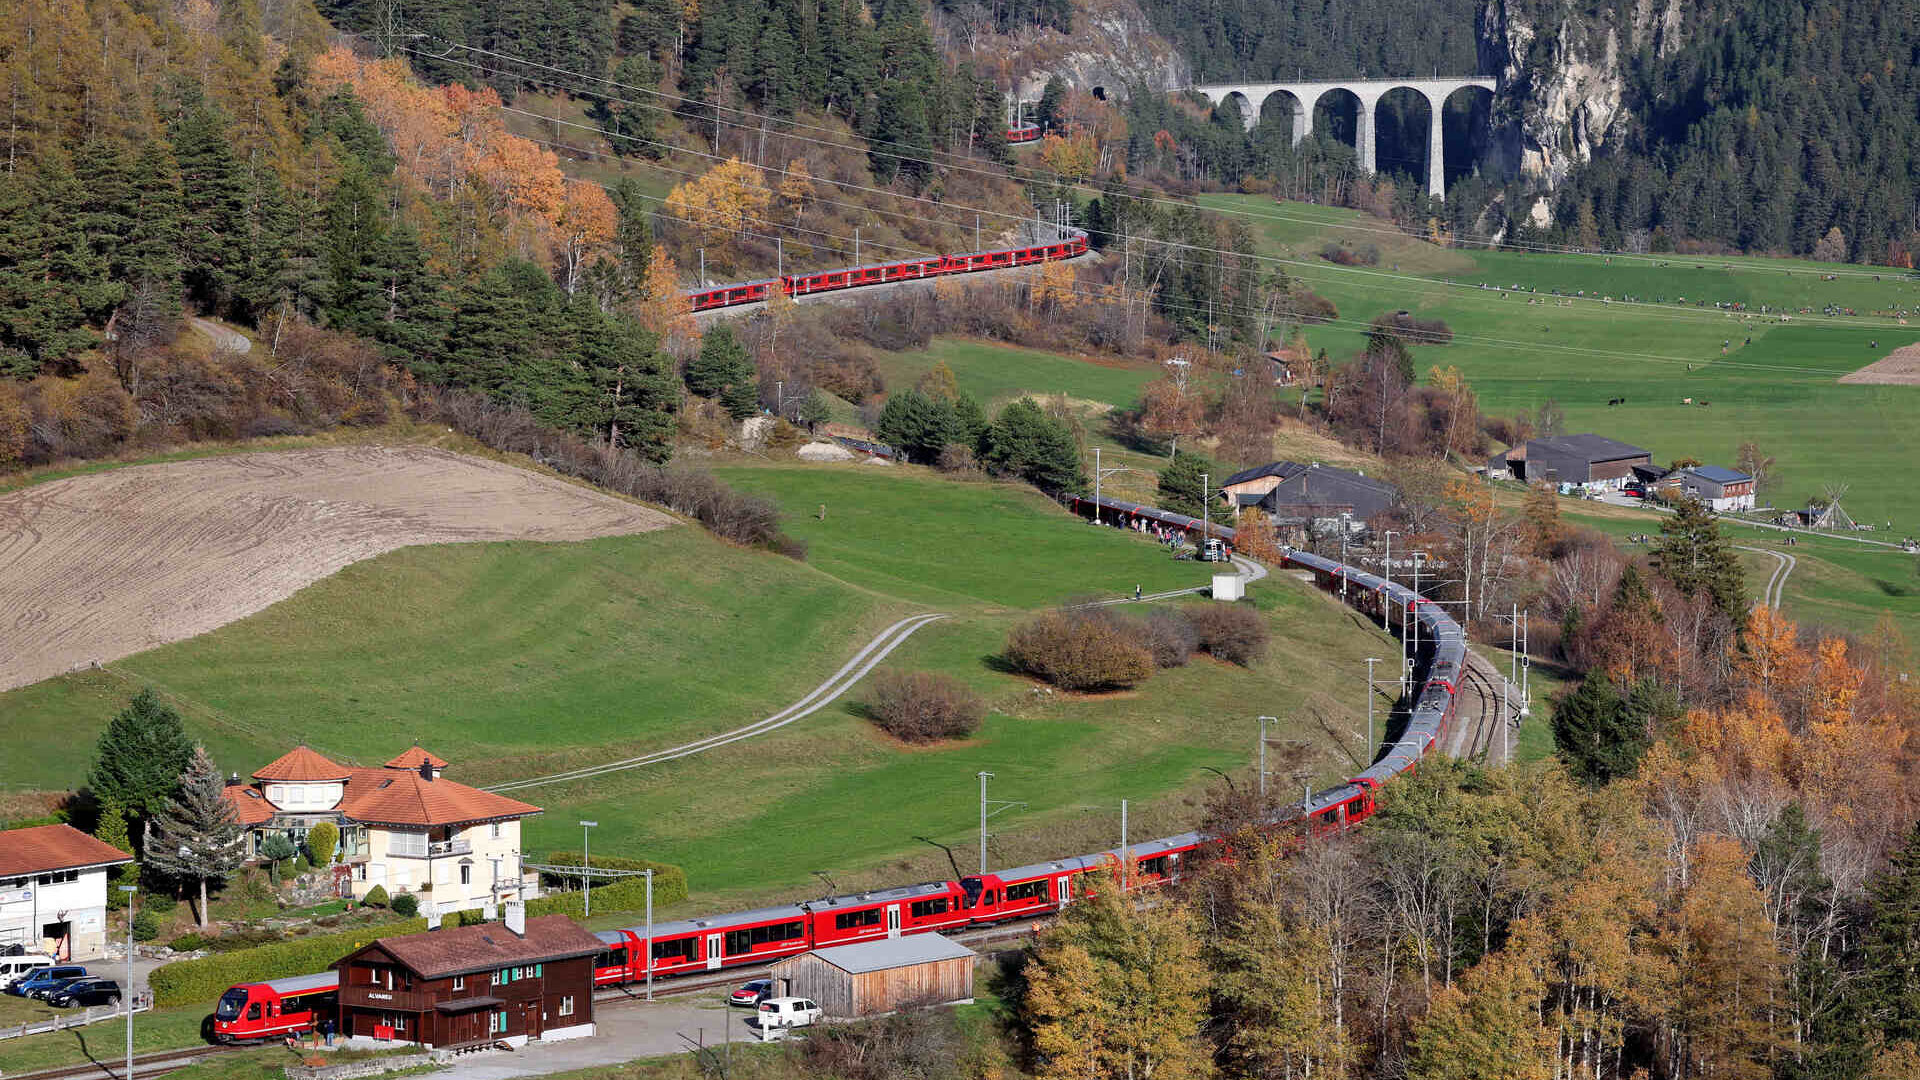 Најдужи ускотрачни воз на свету на прузи Албула Ретске железнице у Швајцарској 29. октобра 2022. (Фото: Анди Меттлер/Свисс-Имаге)